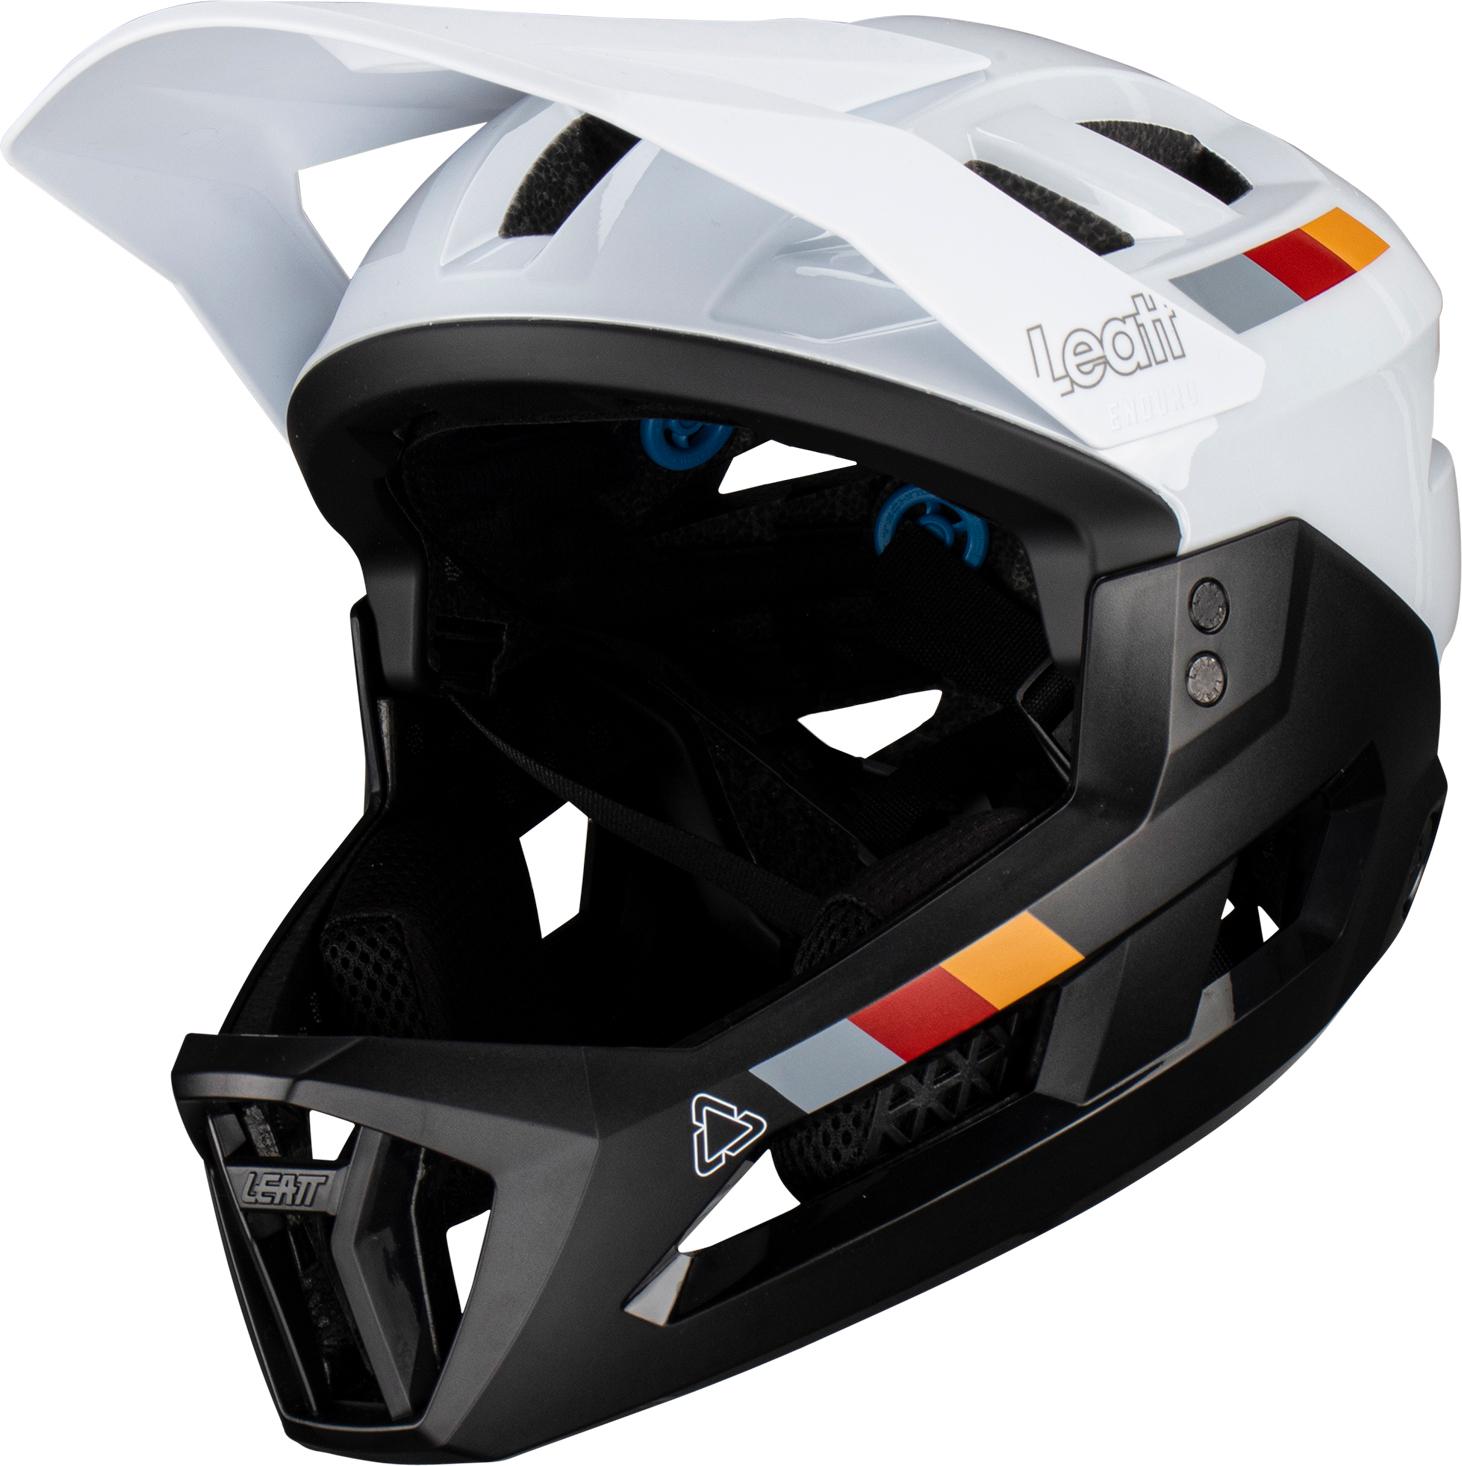 Leatt Mtb Enduro 2.0 Helmet - White